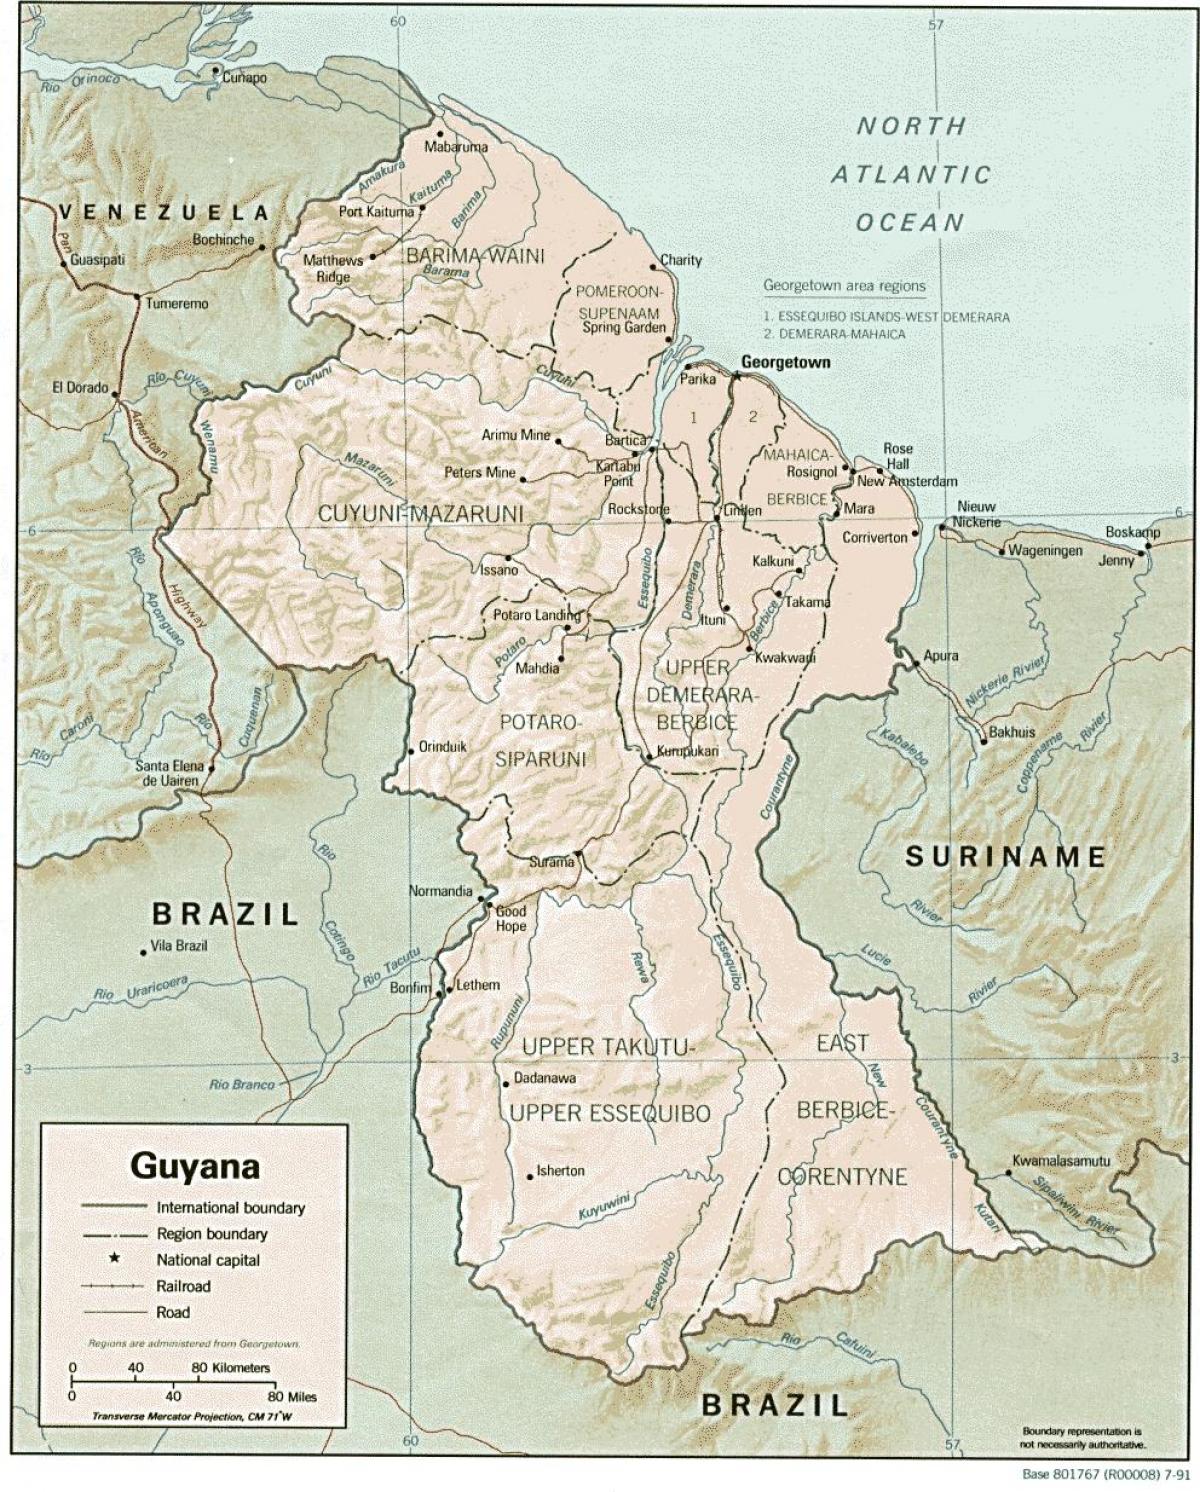 mapa na nagpapakita ng mga amerindian pakikipag-ayos sa Guyana